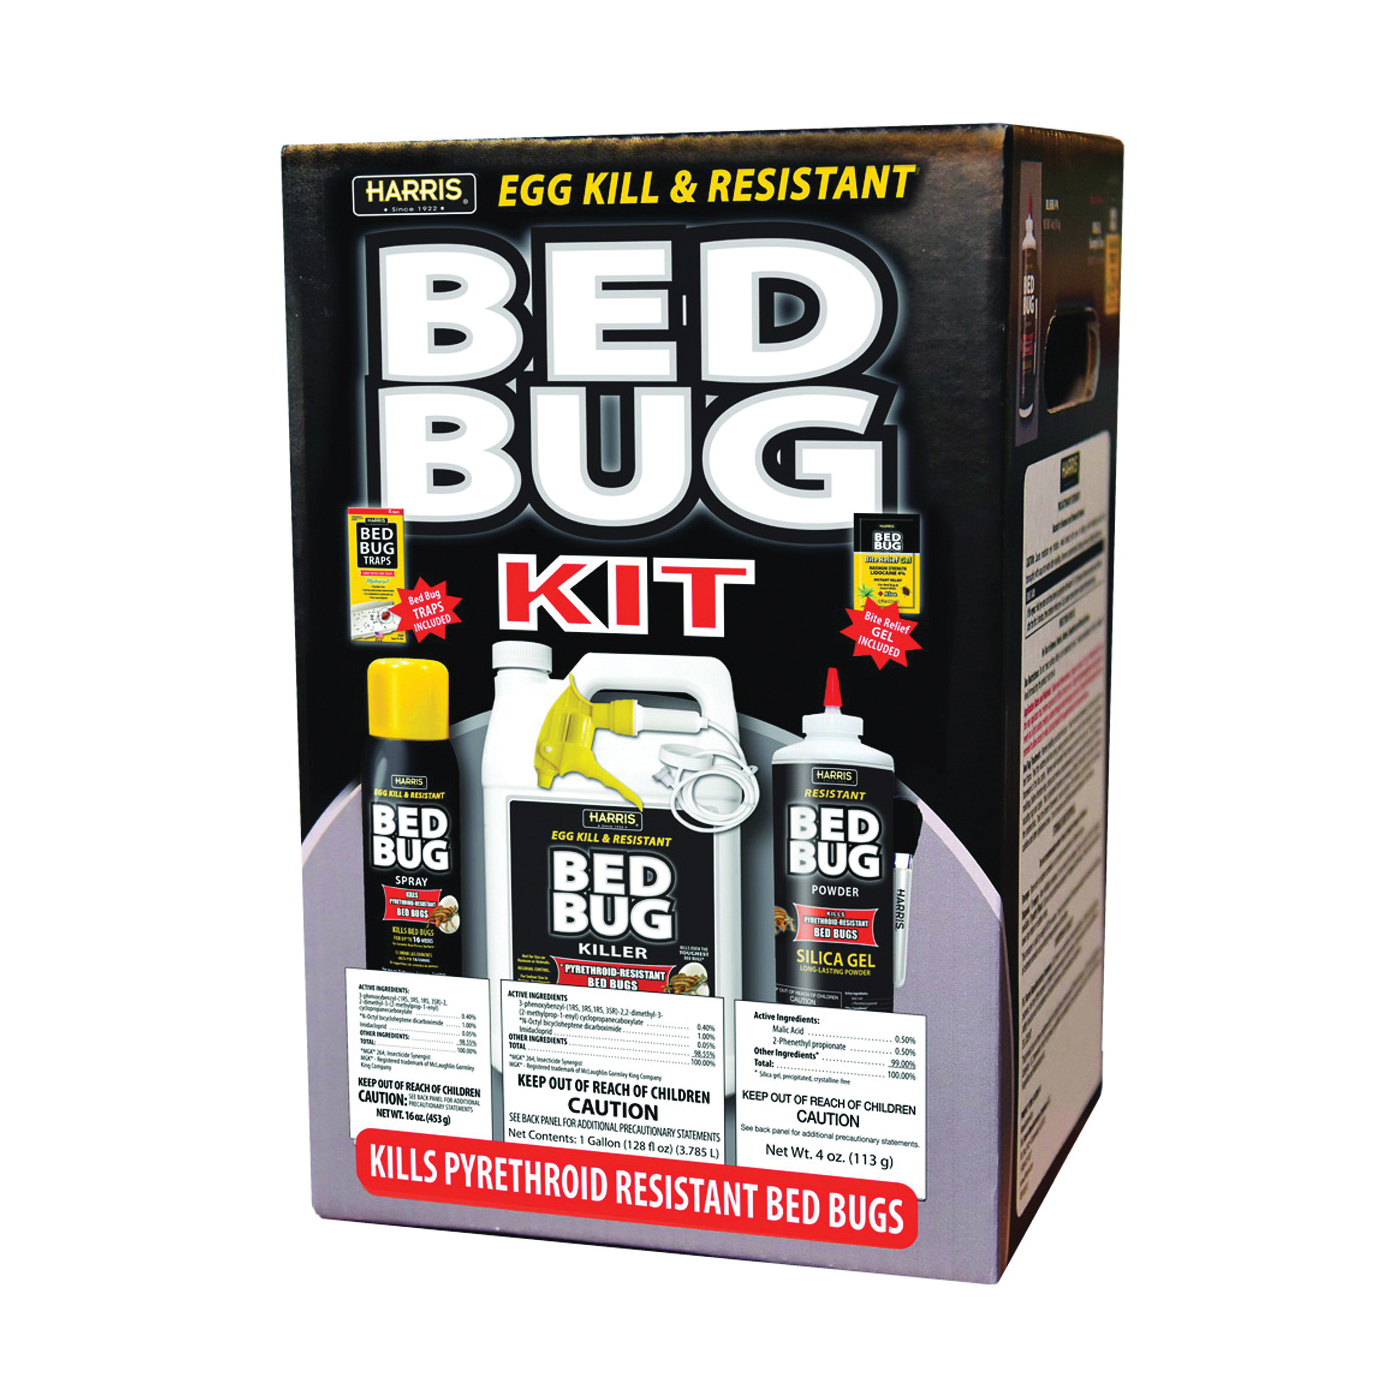 BLKBB-KIT Egg Kill and Resistant Bed Bug Kit, White